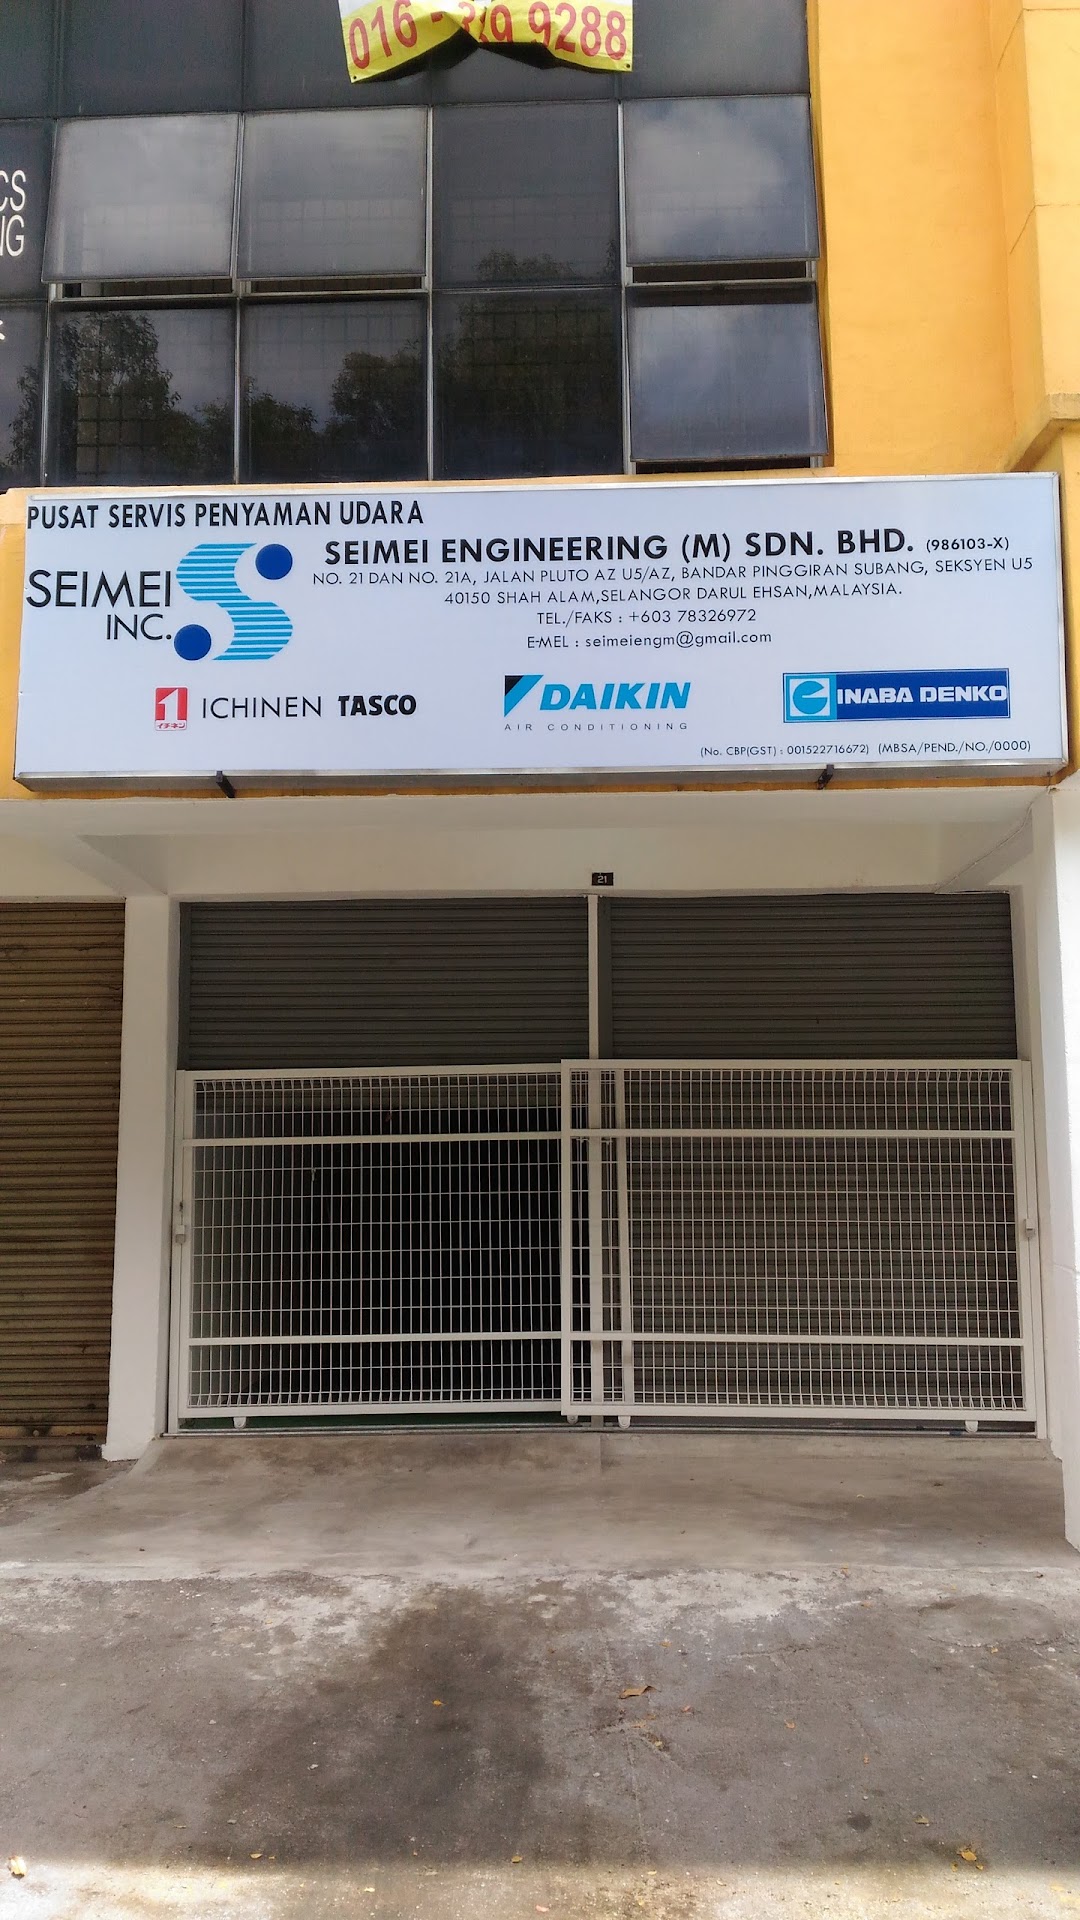 Seimei Engineering Malaysia Sdn Bhd